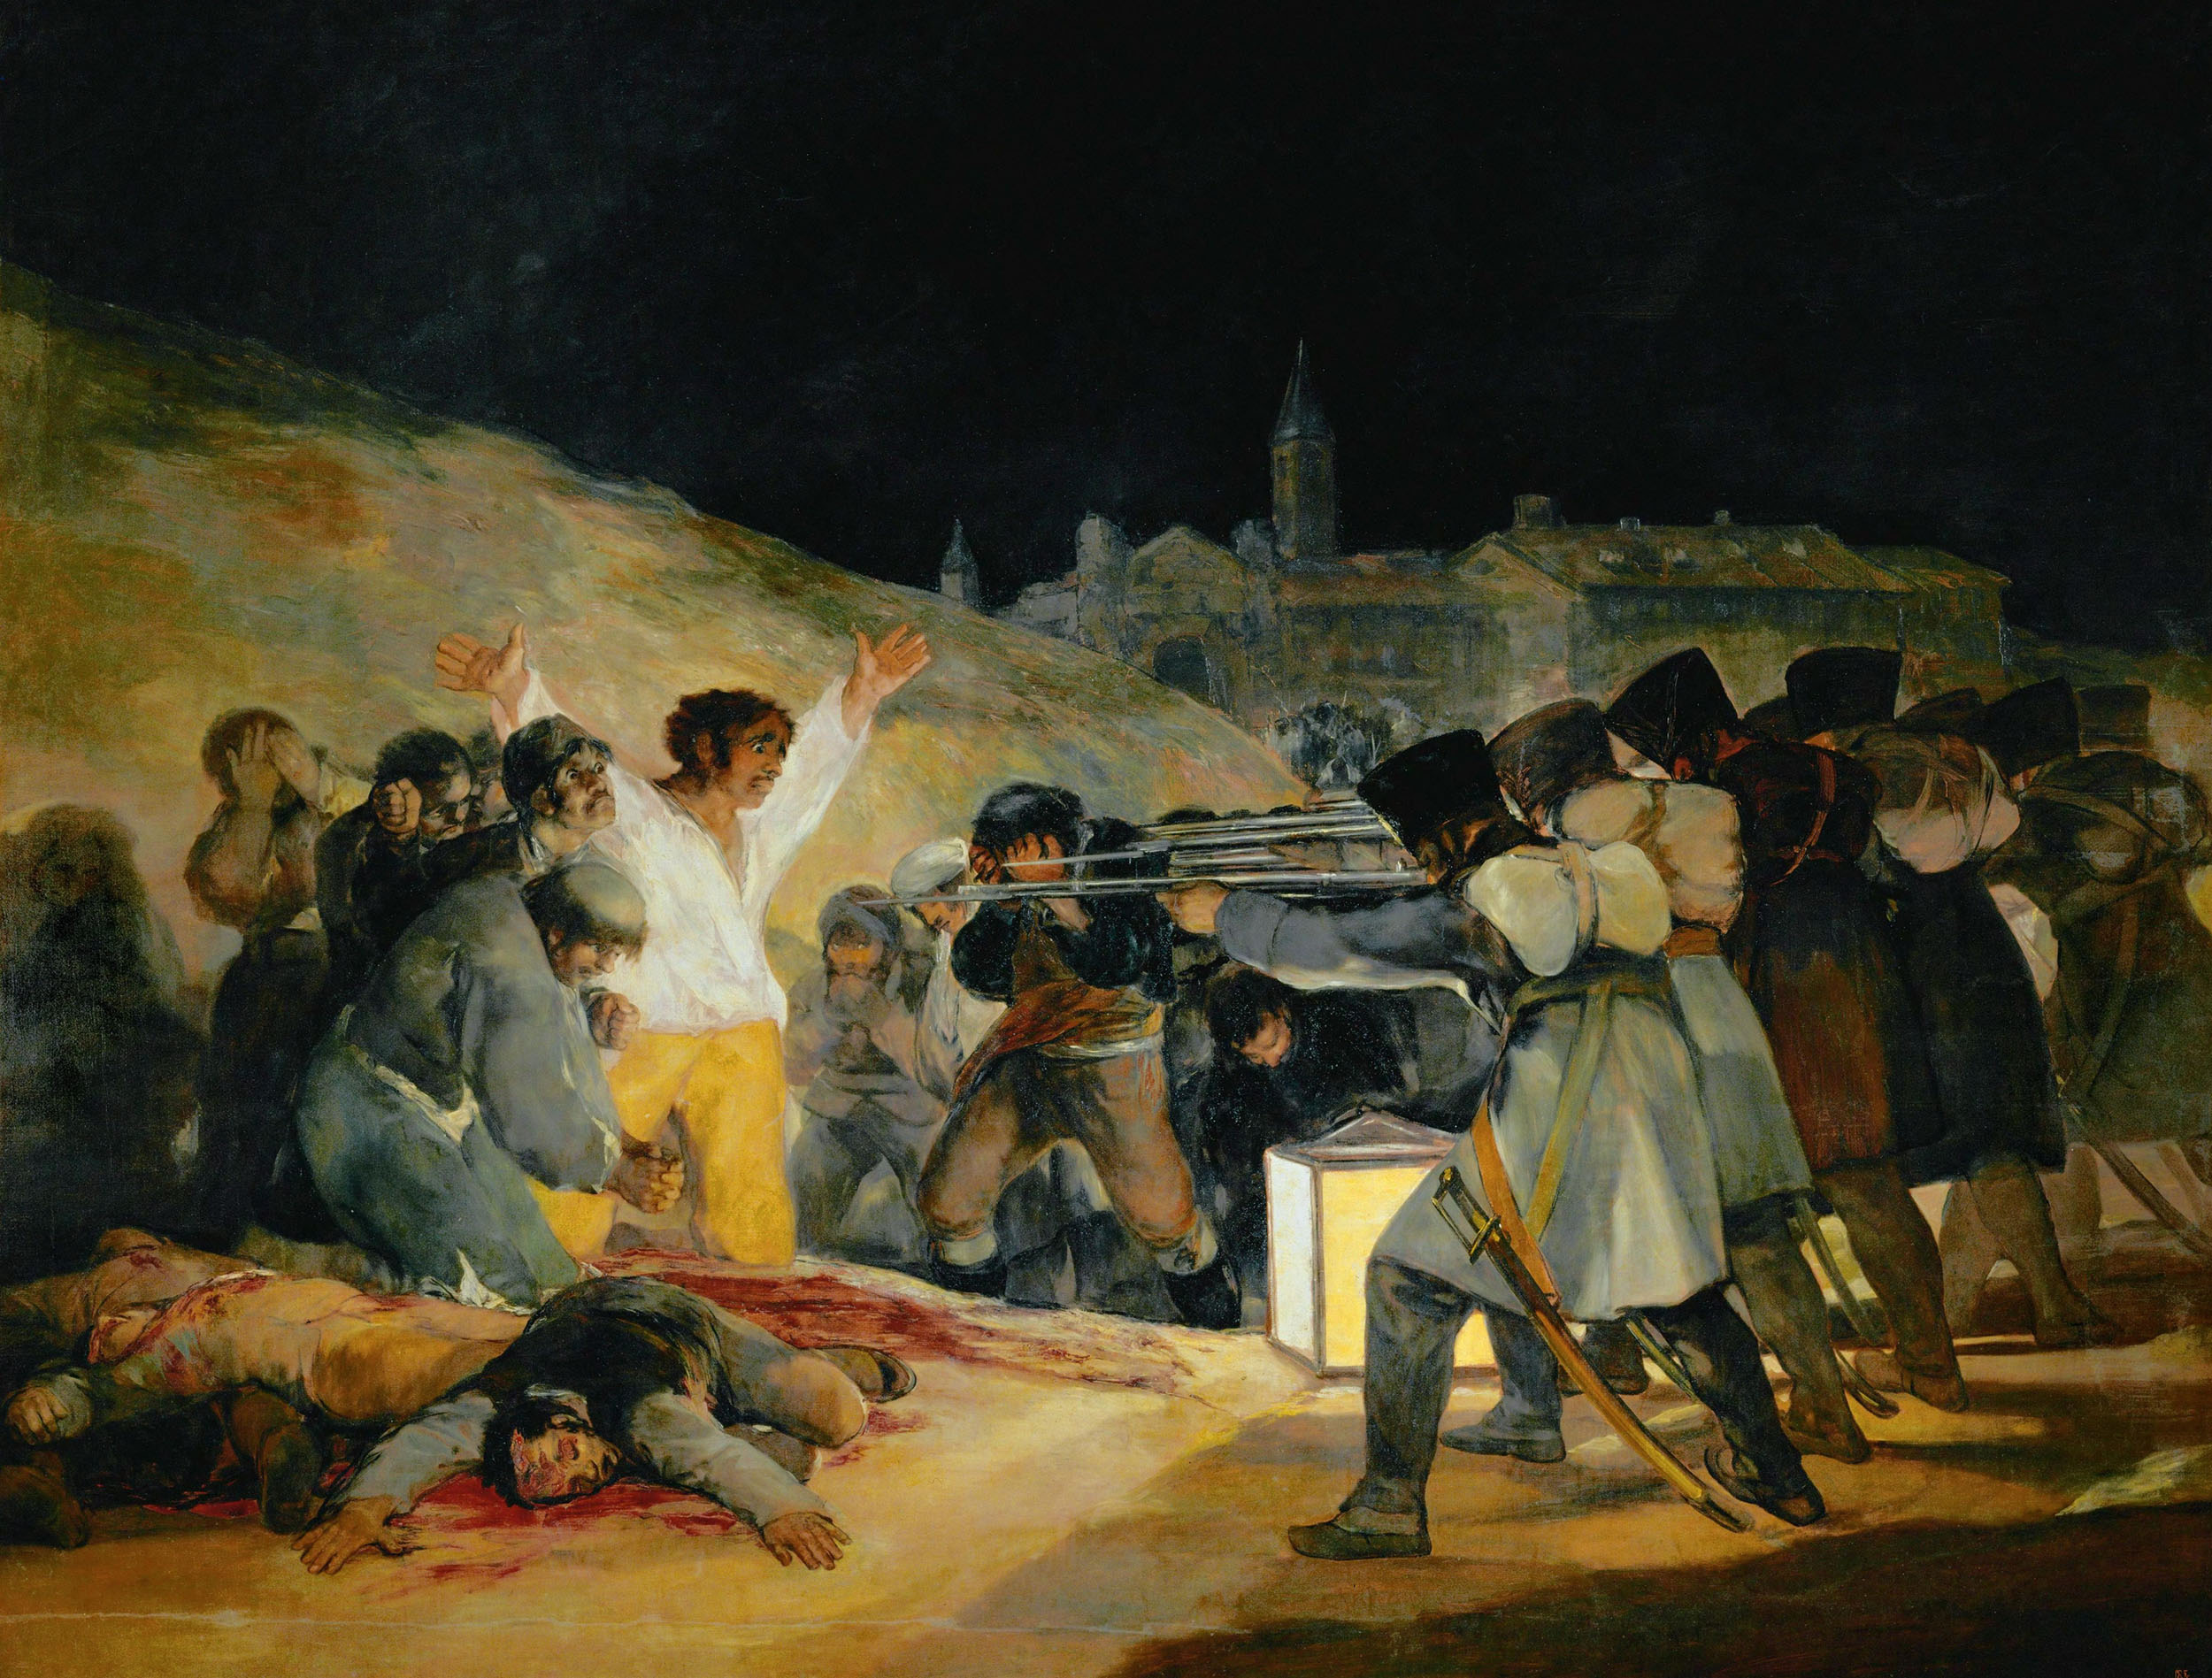 Франсиско Гойя. "Расстрел повстанцев в ночь со 2 на 3 мая 1808 в Мадриде". 1814.